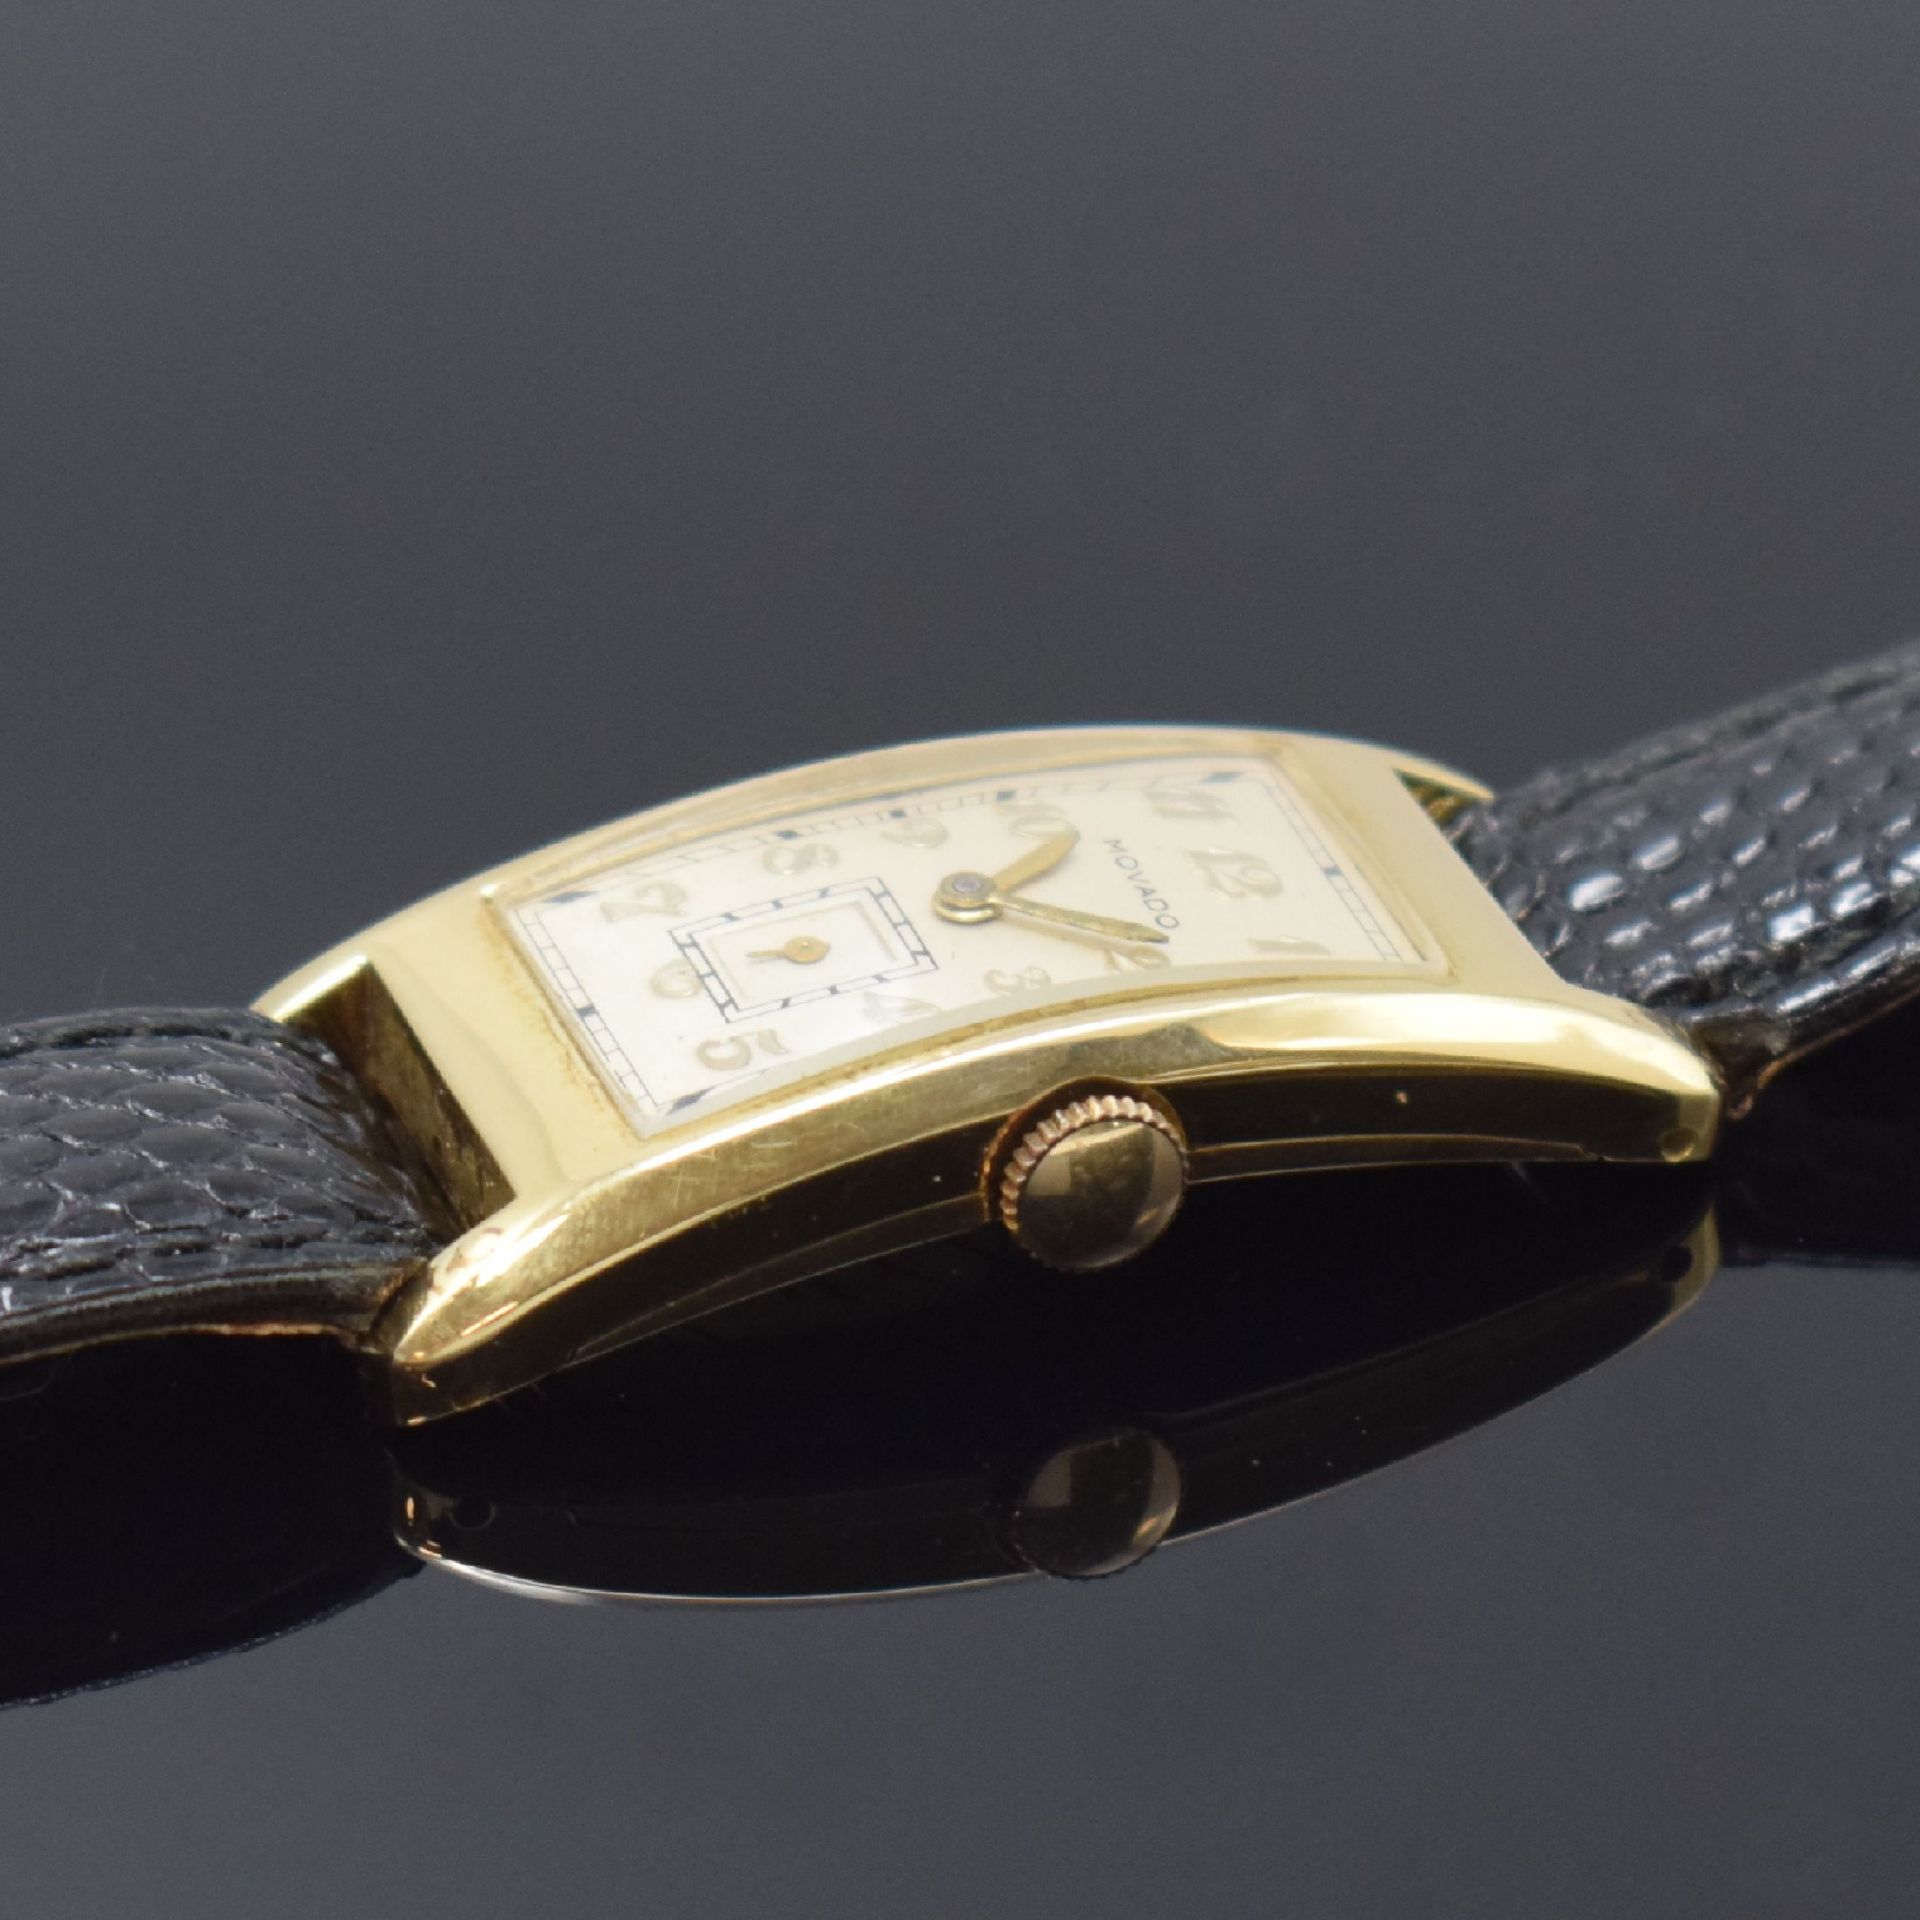 MOVADO rechteckige Armbanduhr Referenz 42246 in GG - Image 3 of 5